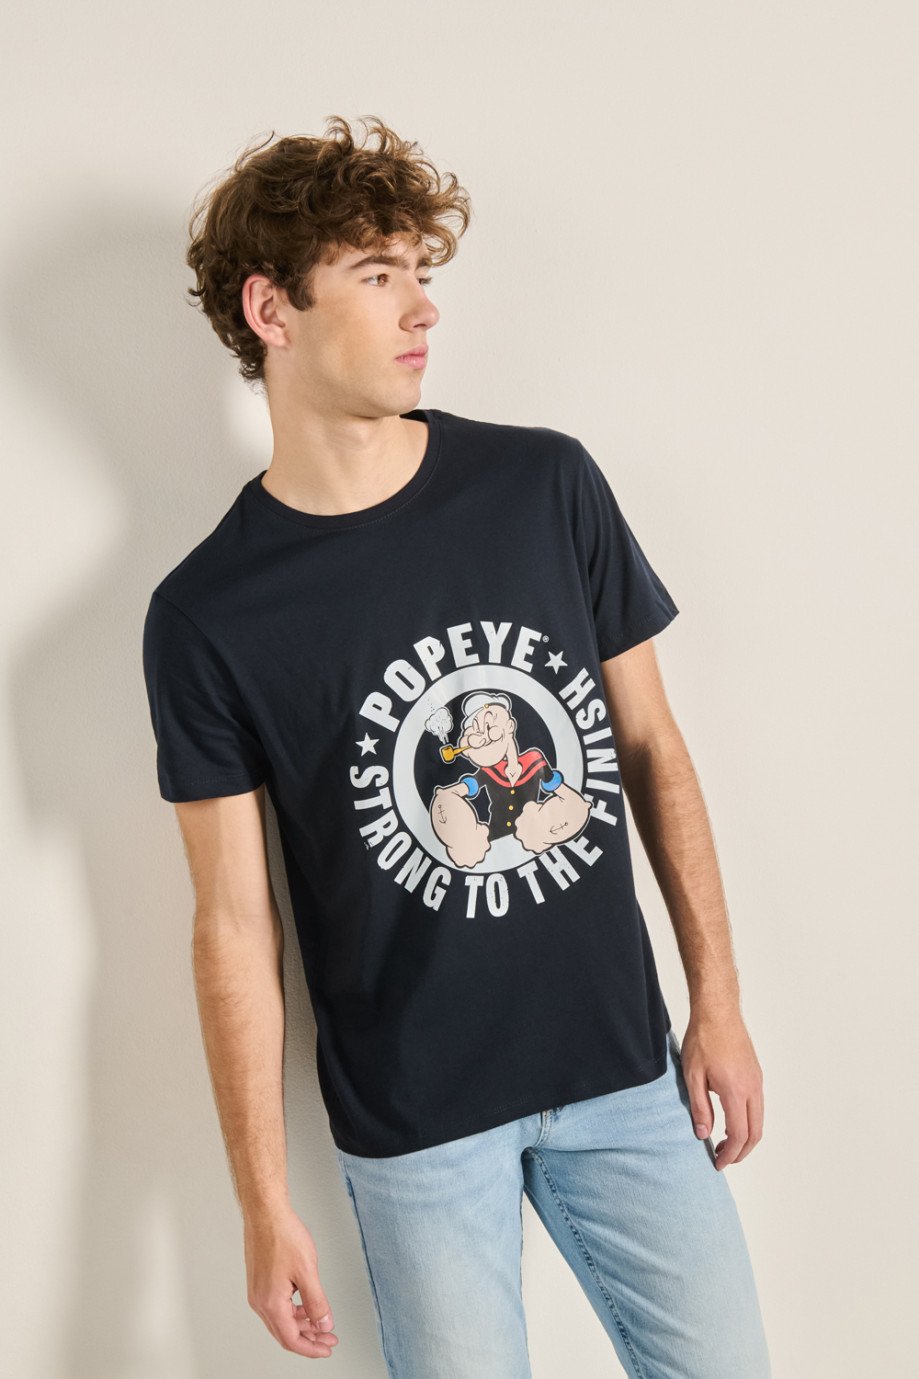 Camiseta unicolor manga corta y diseño en frente de Popeye